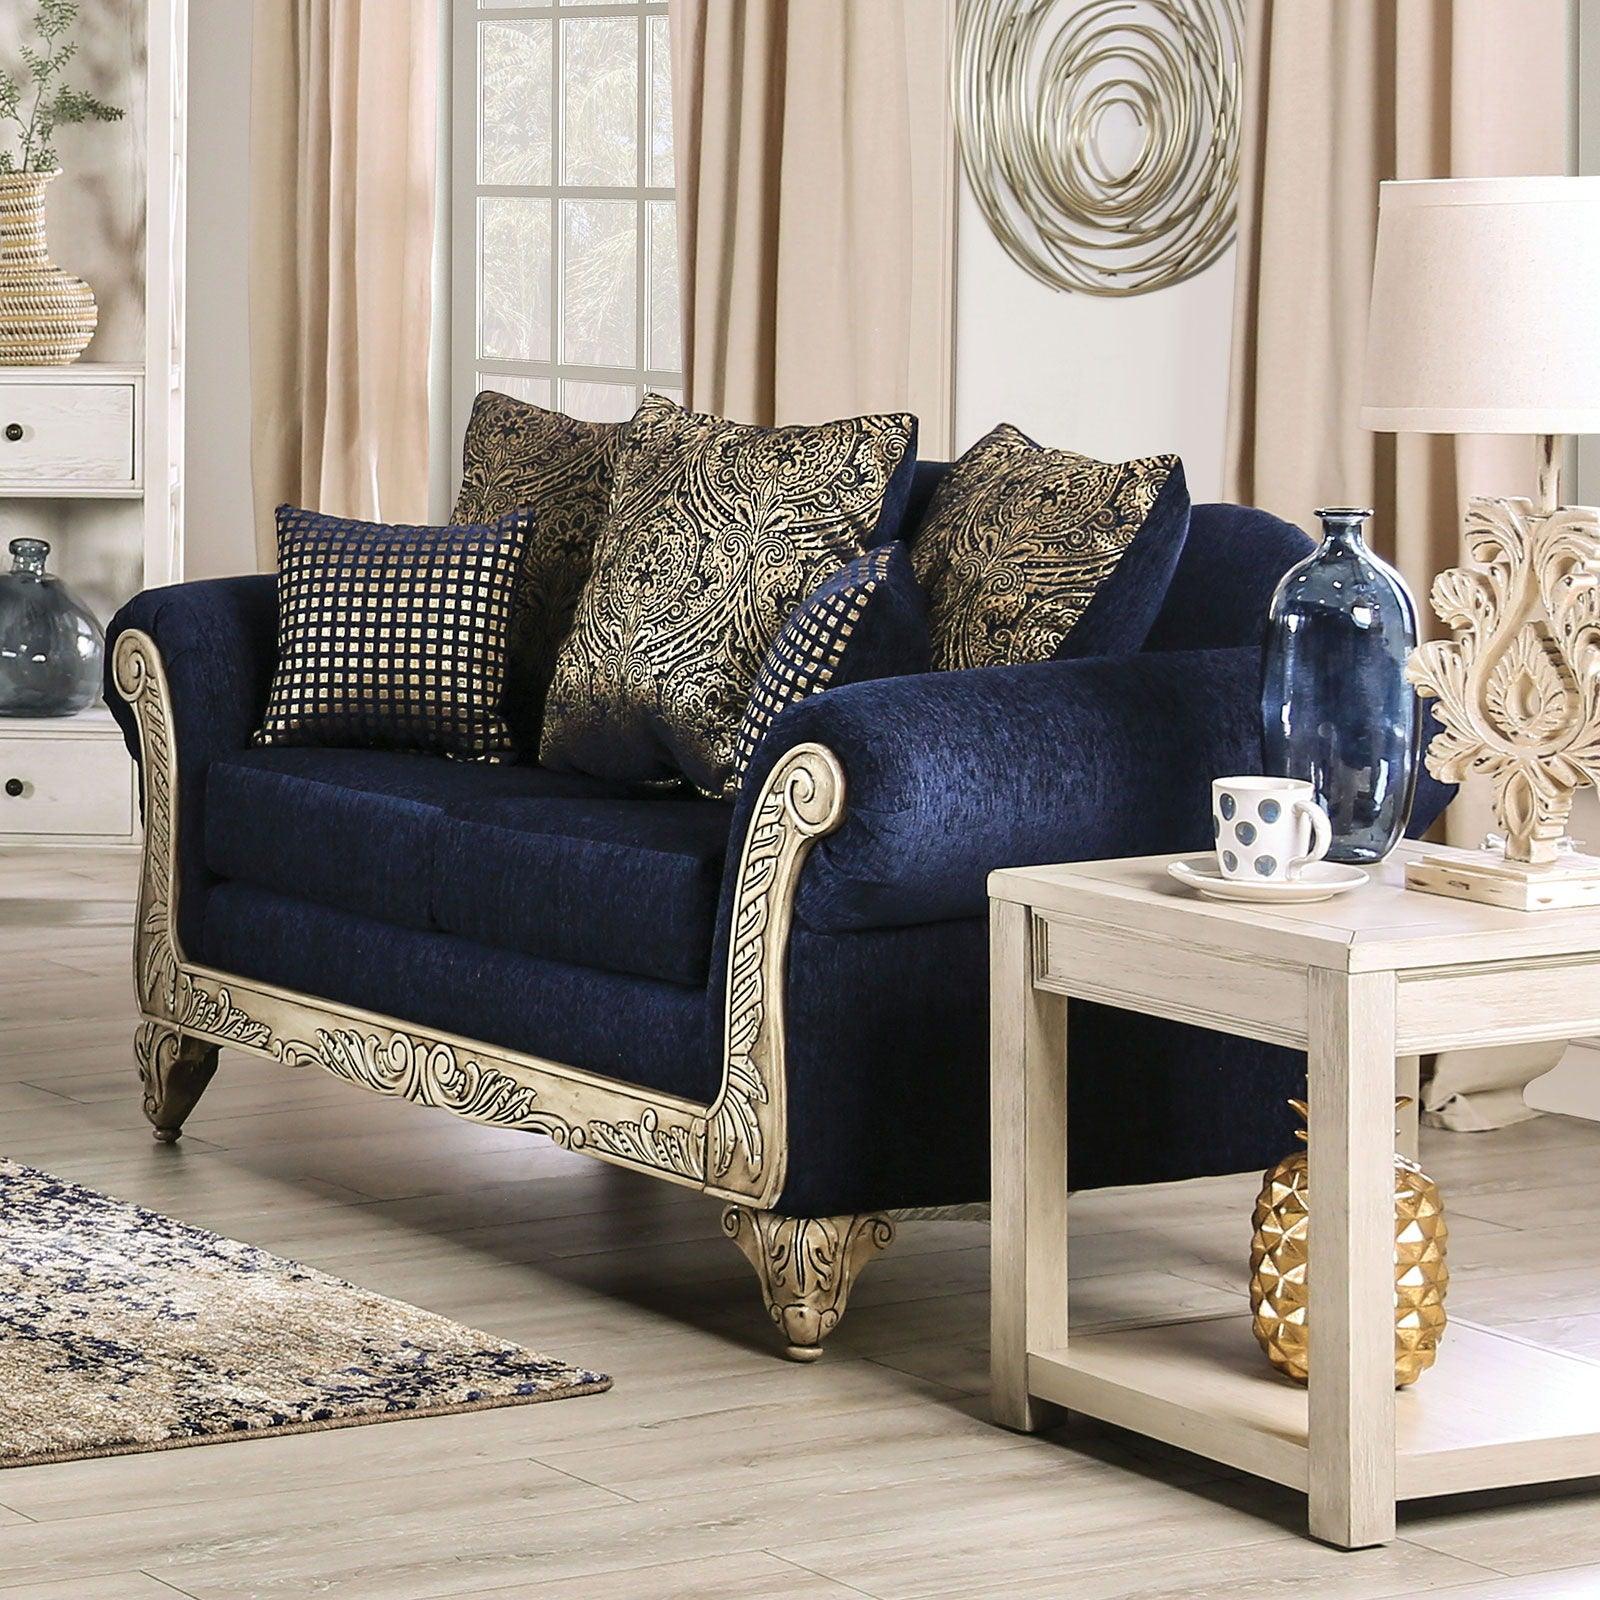 Furniture of America - Marinella - Loveseat - Royal Blue - 5th Avenue Furniture